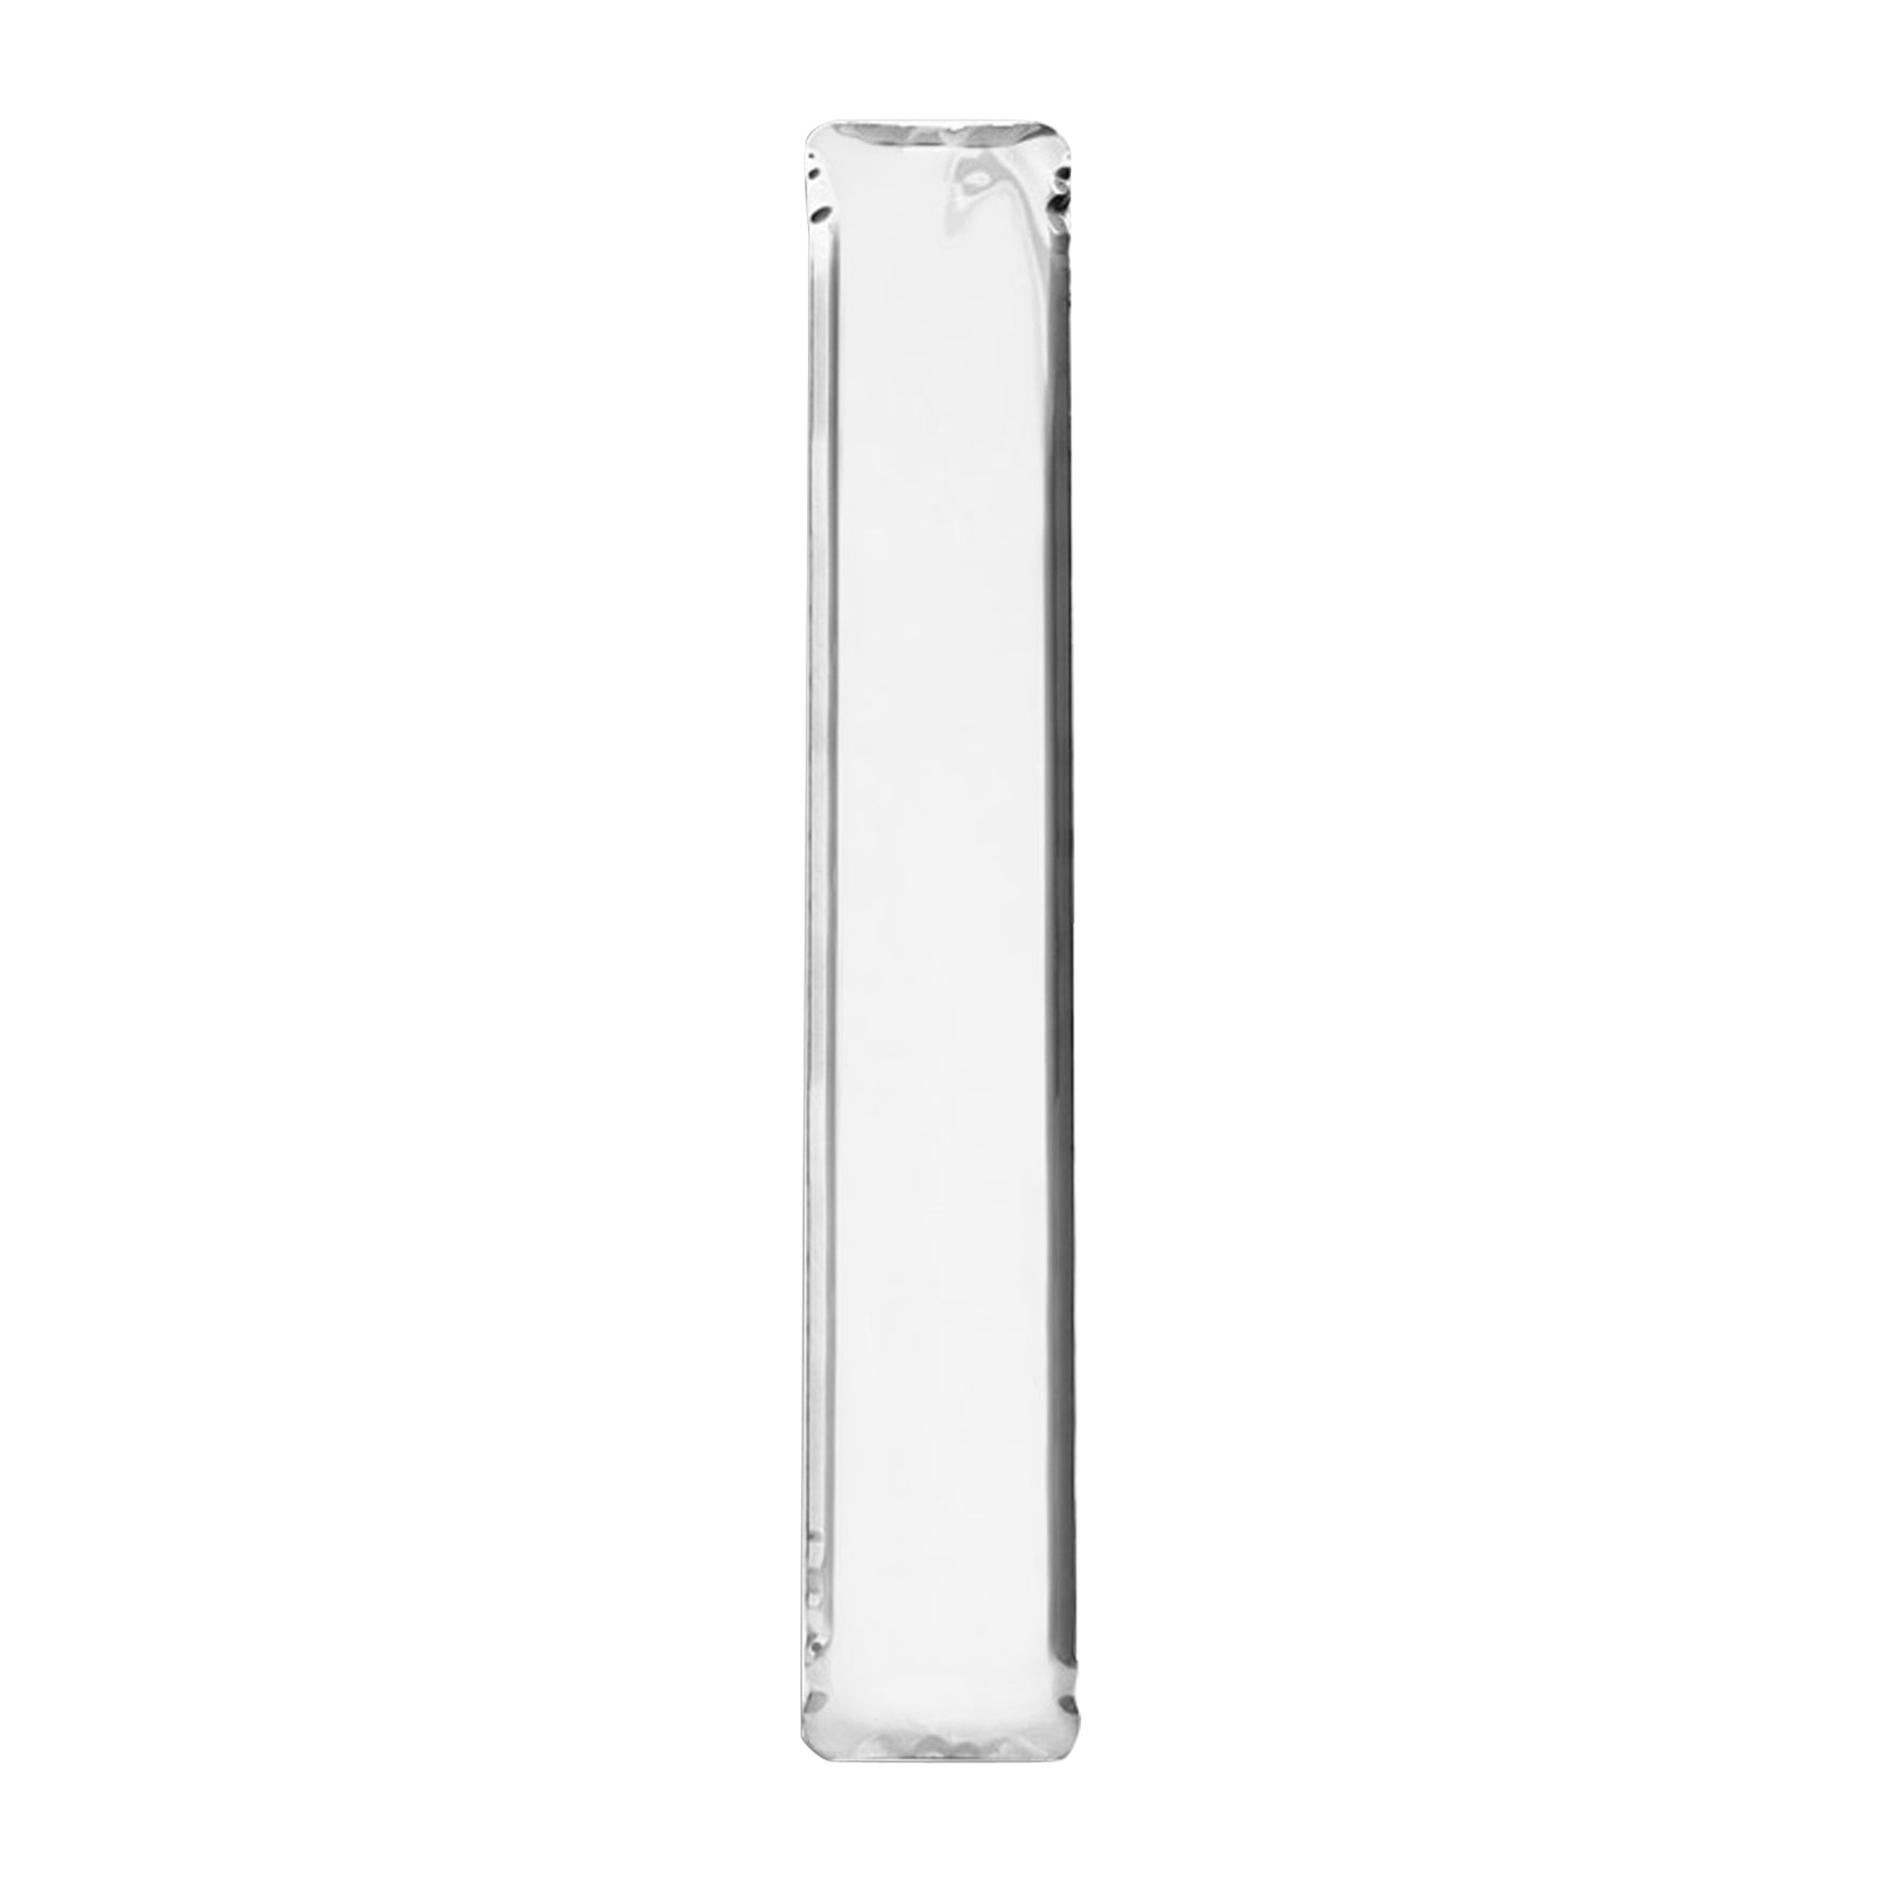 Tafla Mirror IQ Monumental Mirror by Zieta Prozessdesign in Stainless Steel